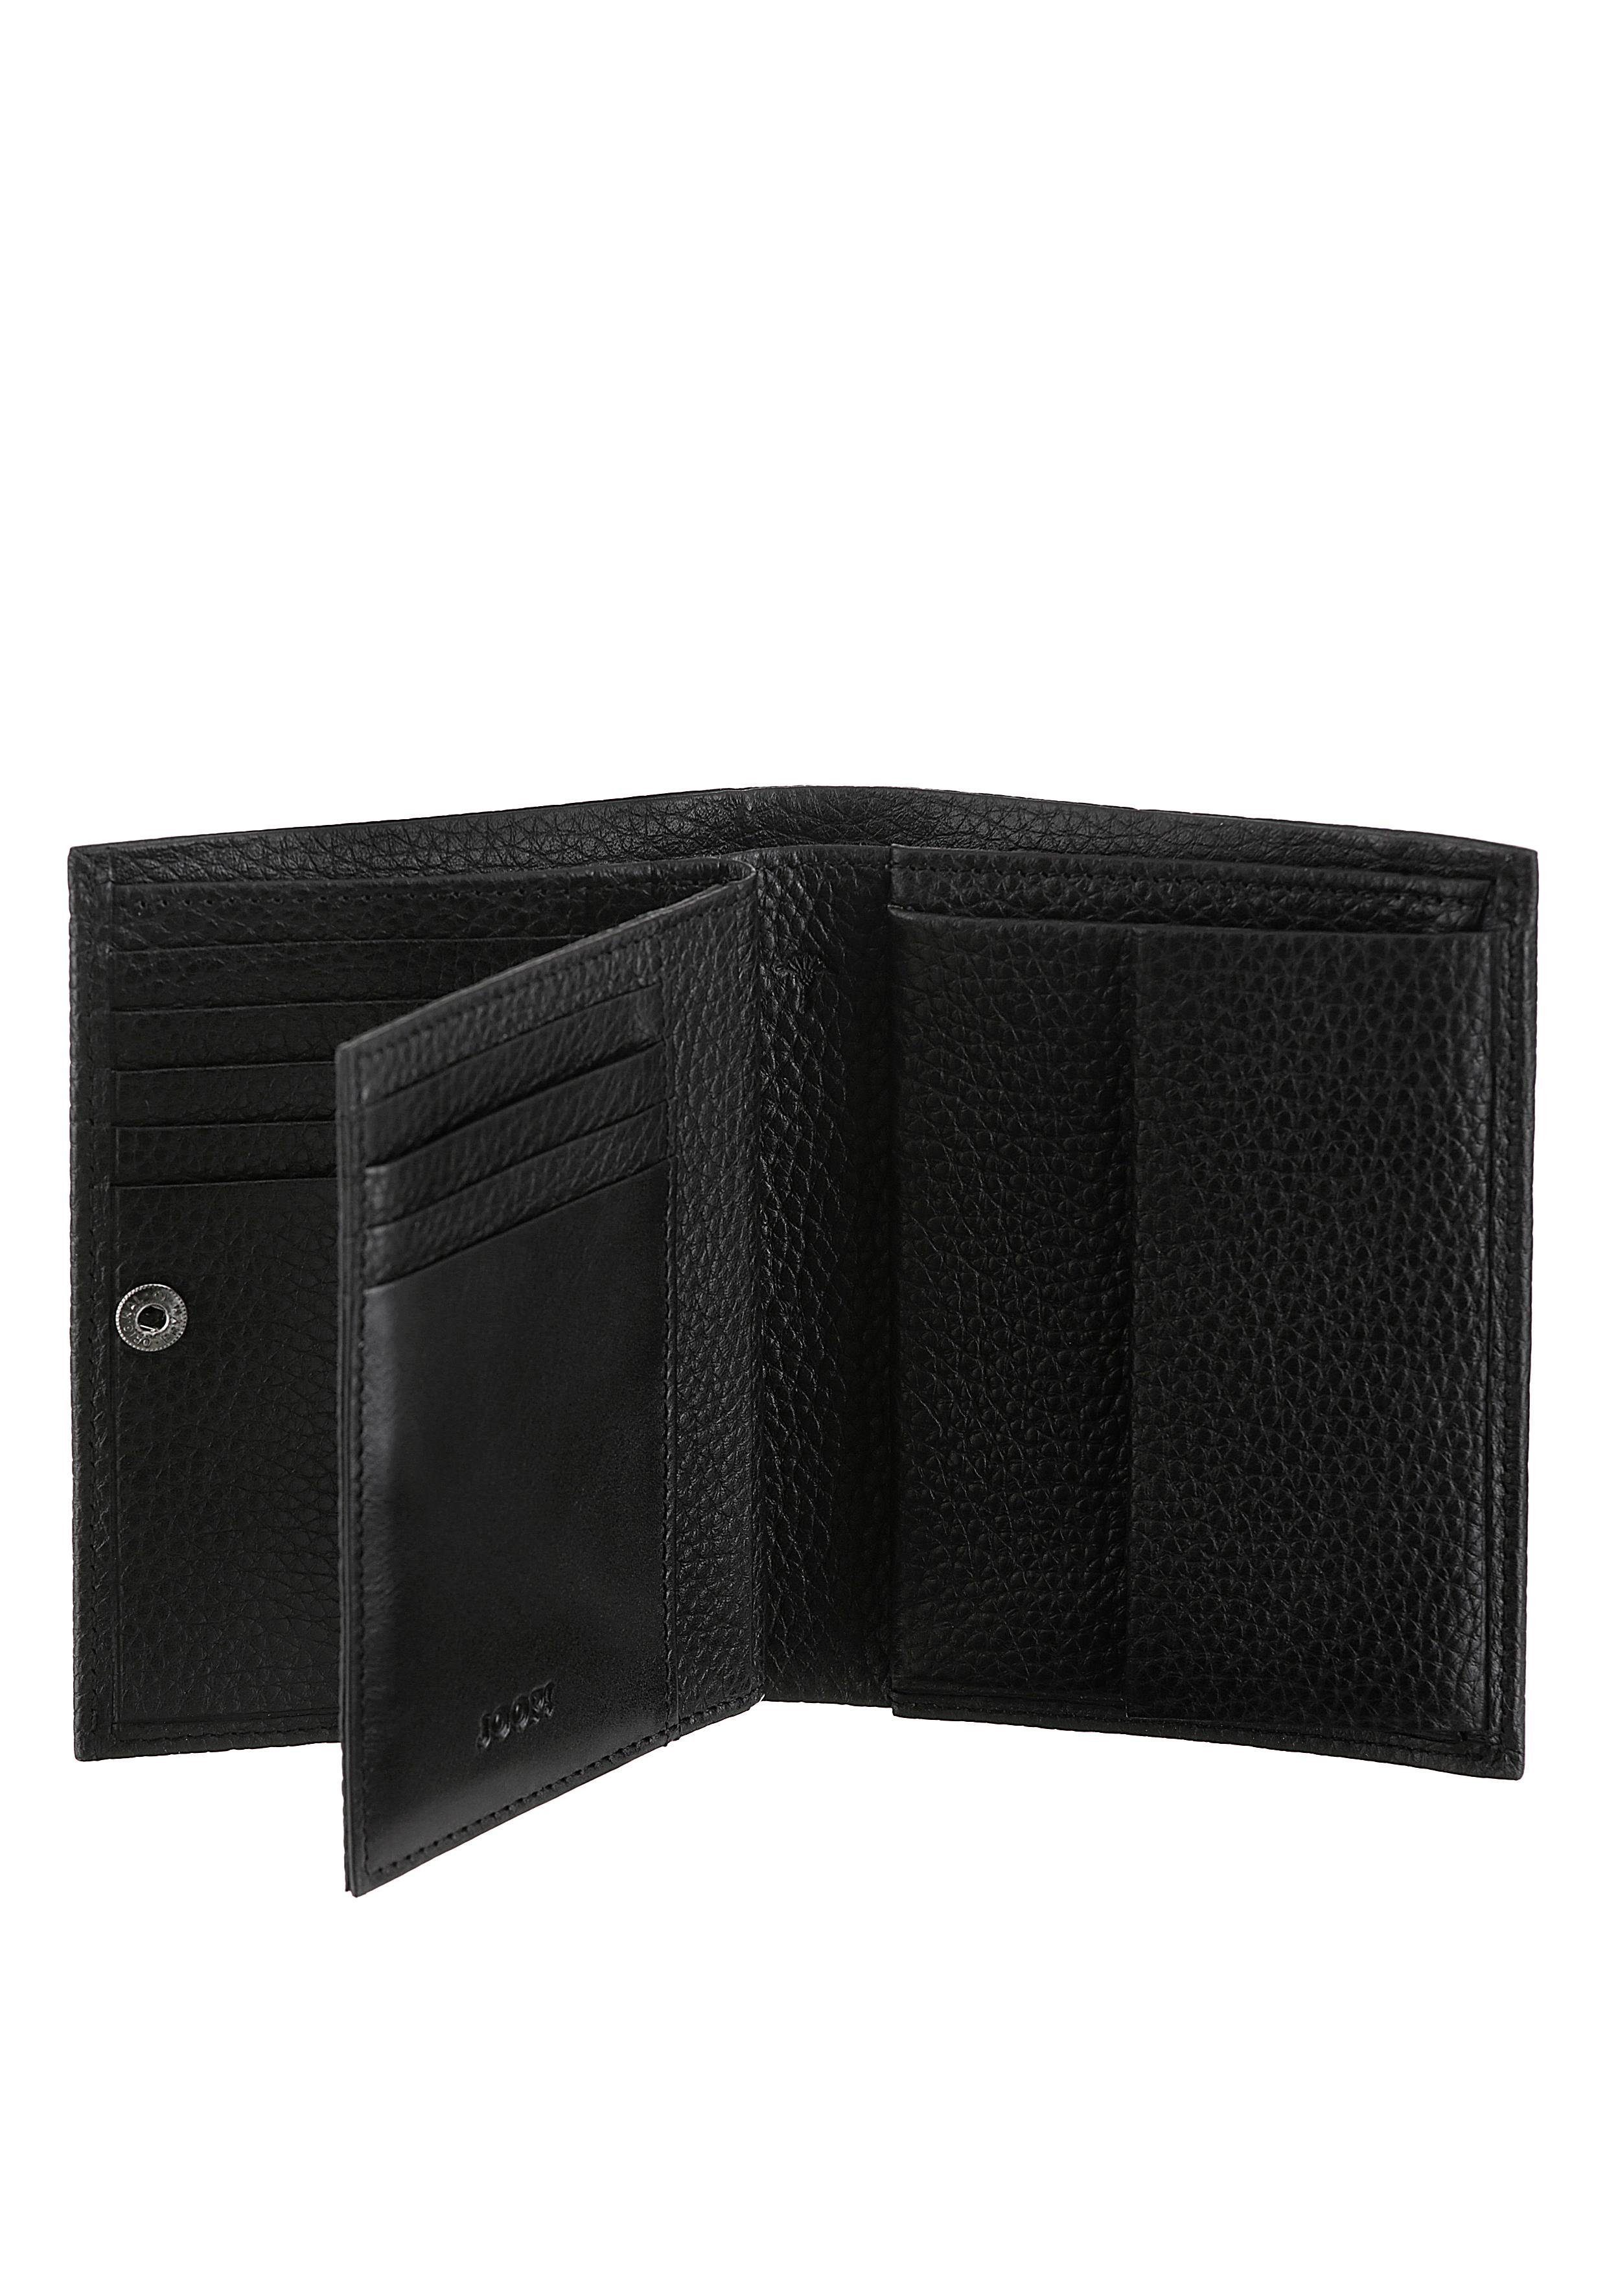 Joop! Geldbörse Cardona Ladon schwarz Leder BillFold aus hochwertigem im Design V8, zeitlosen